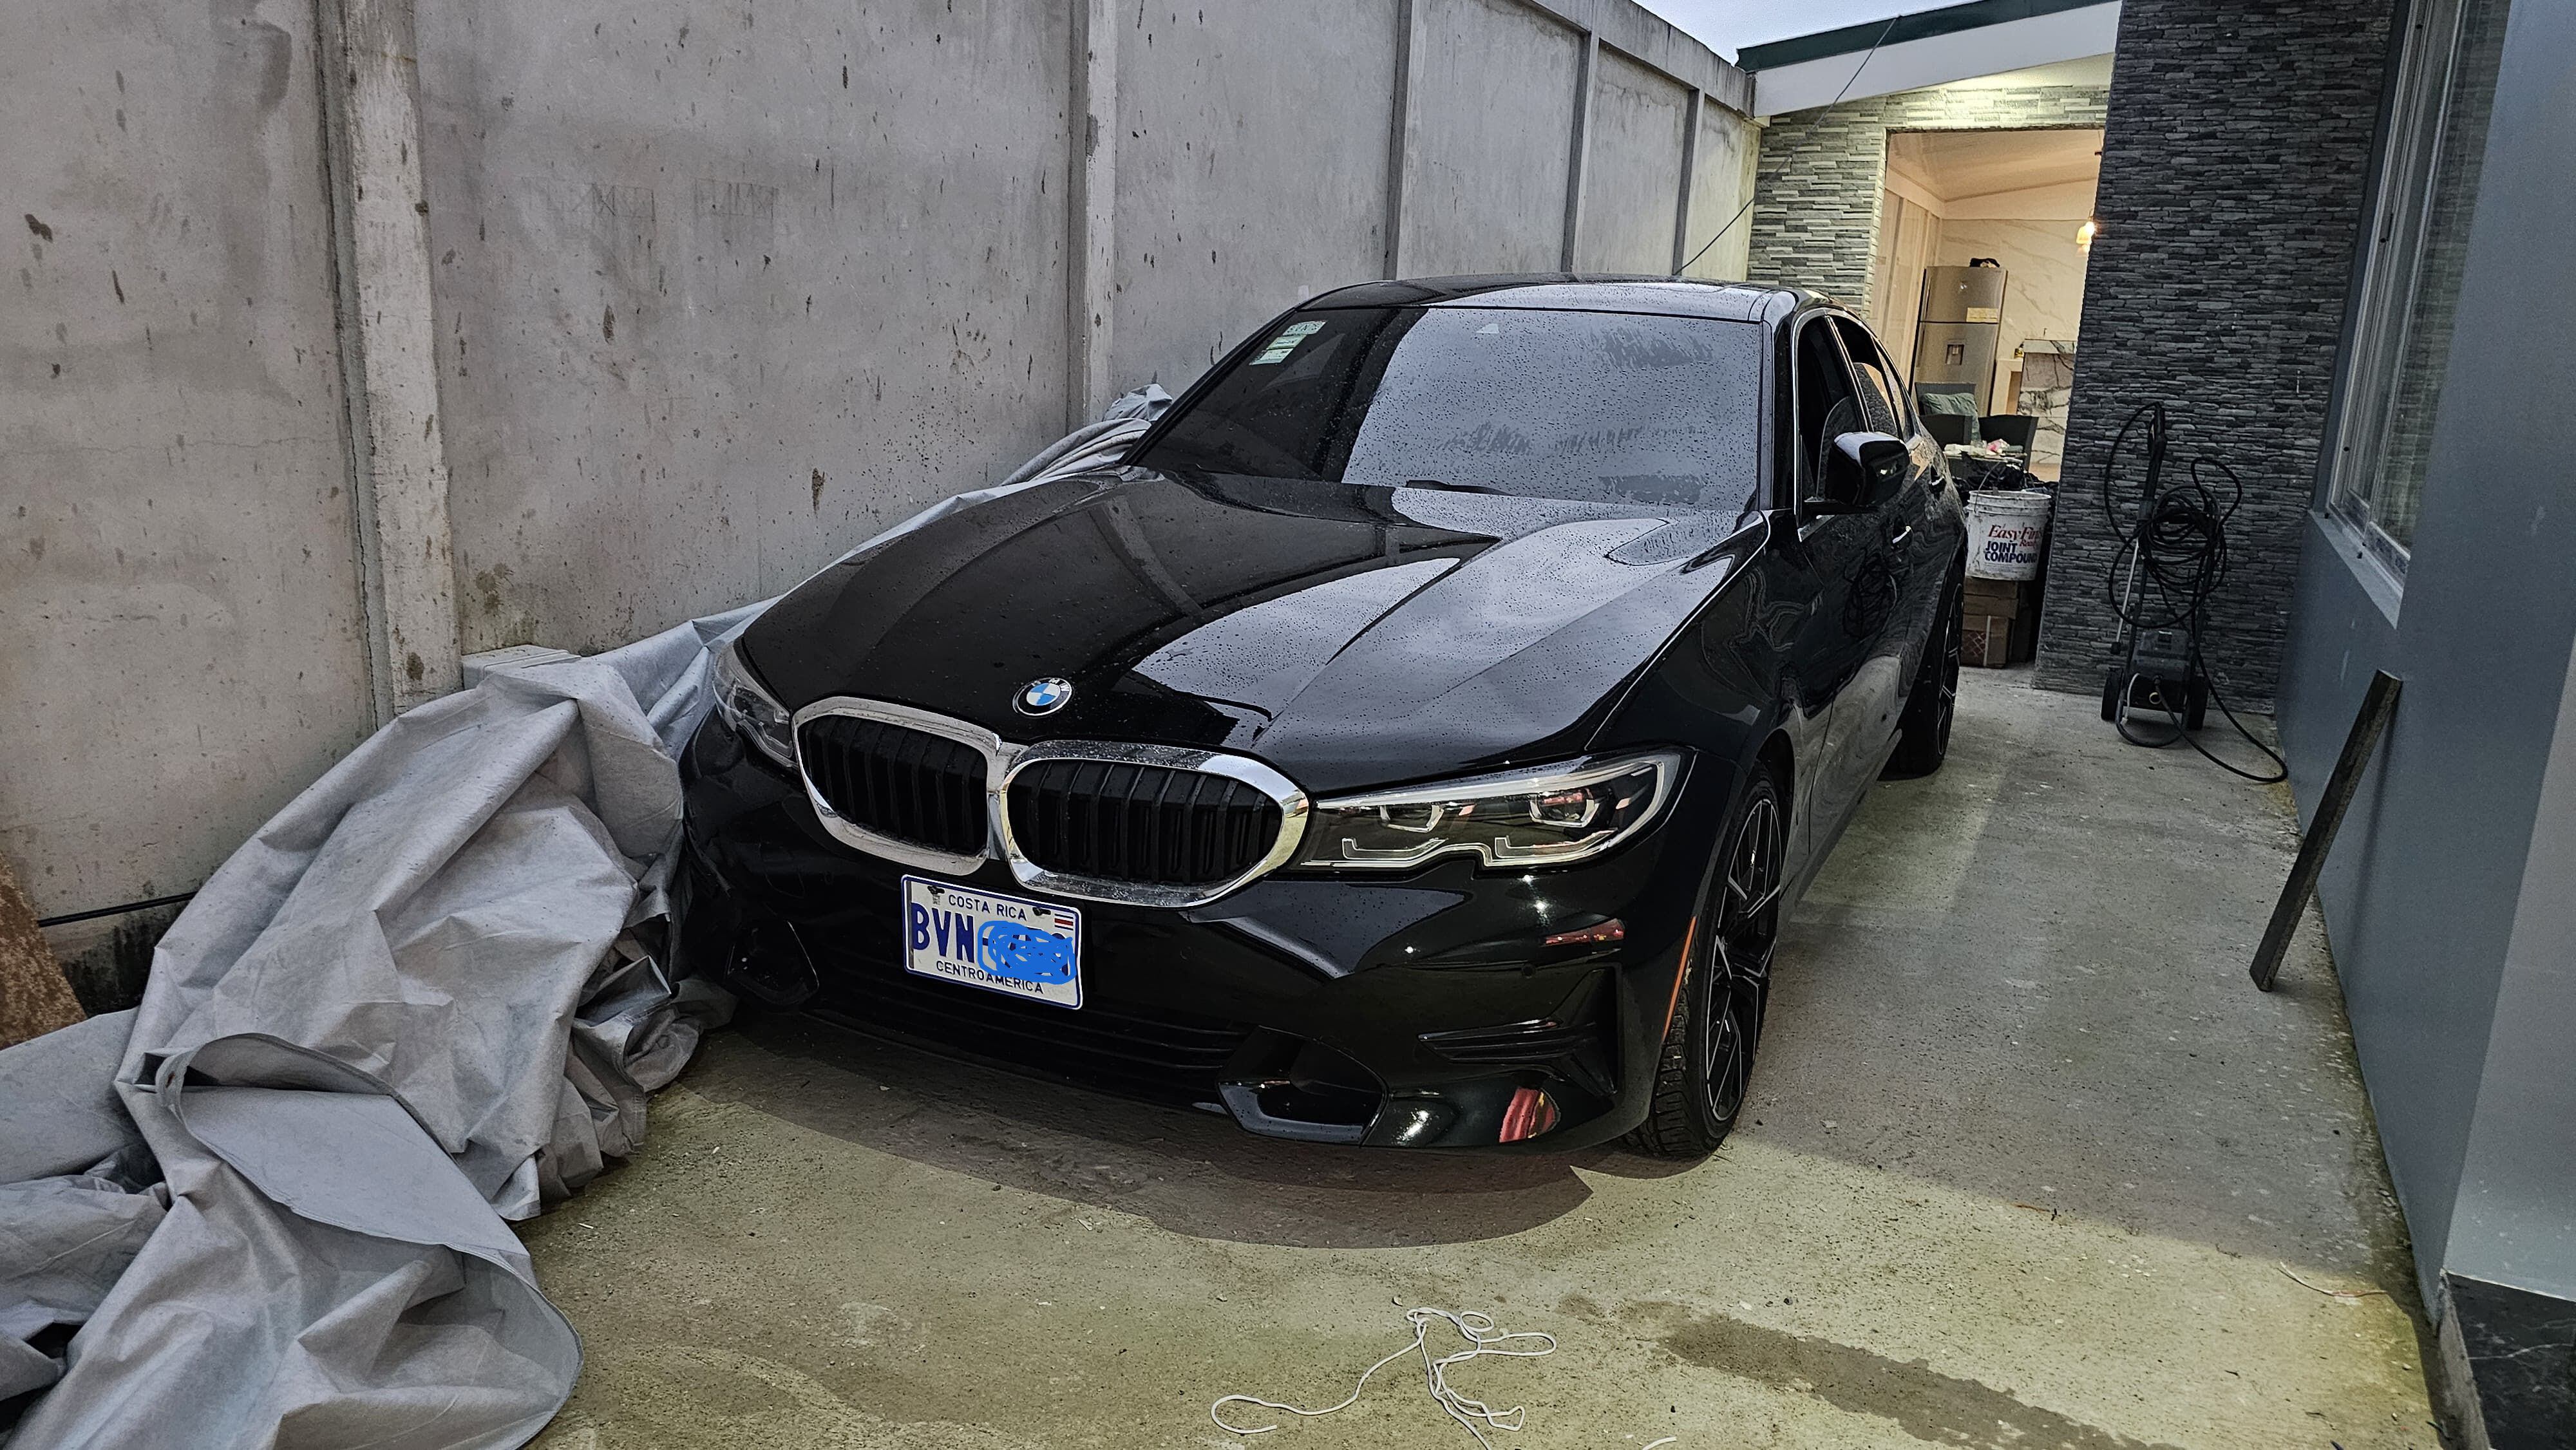 Este BMW decomisado a la banda está valorado en ¢27,8 millones y es blindado. Foto: Cortesía OIJ